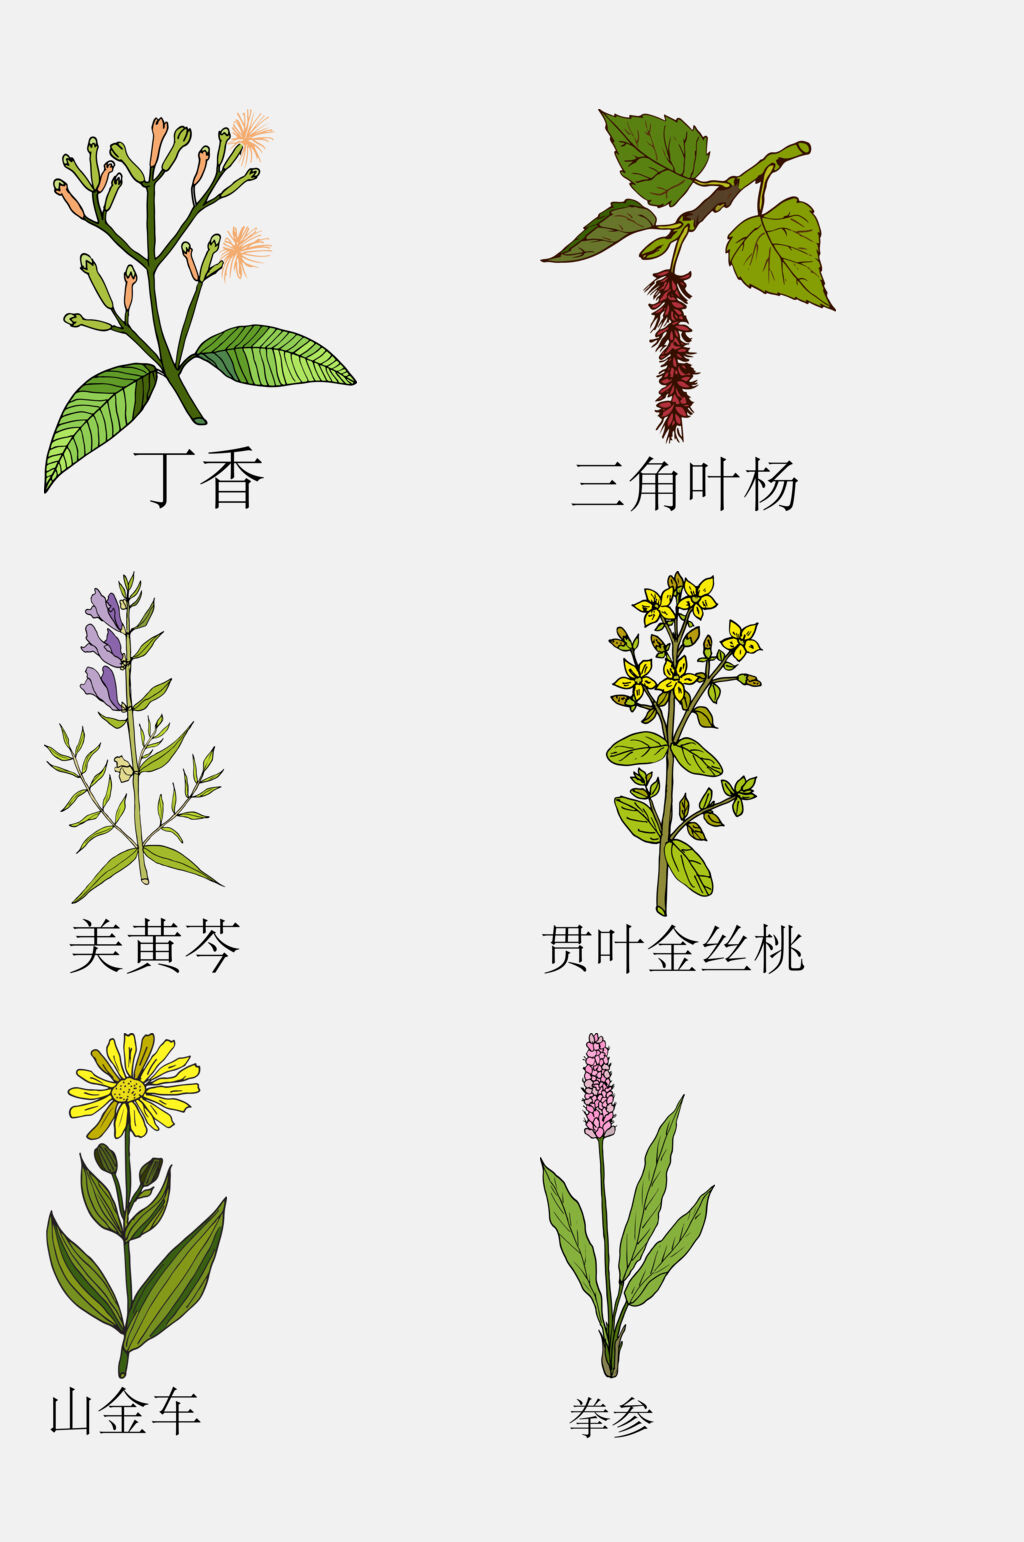 众图网独家提供清新手绘线描中草药草本植物免抠素材素